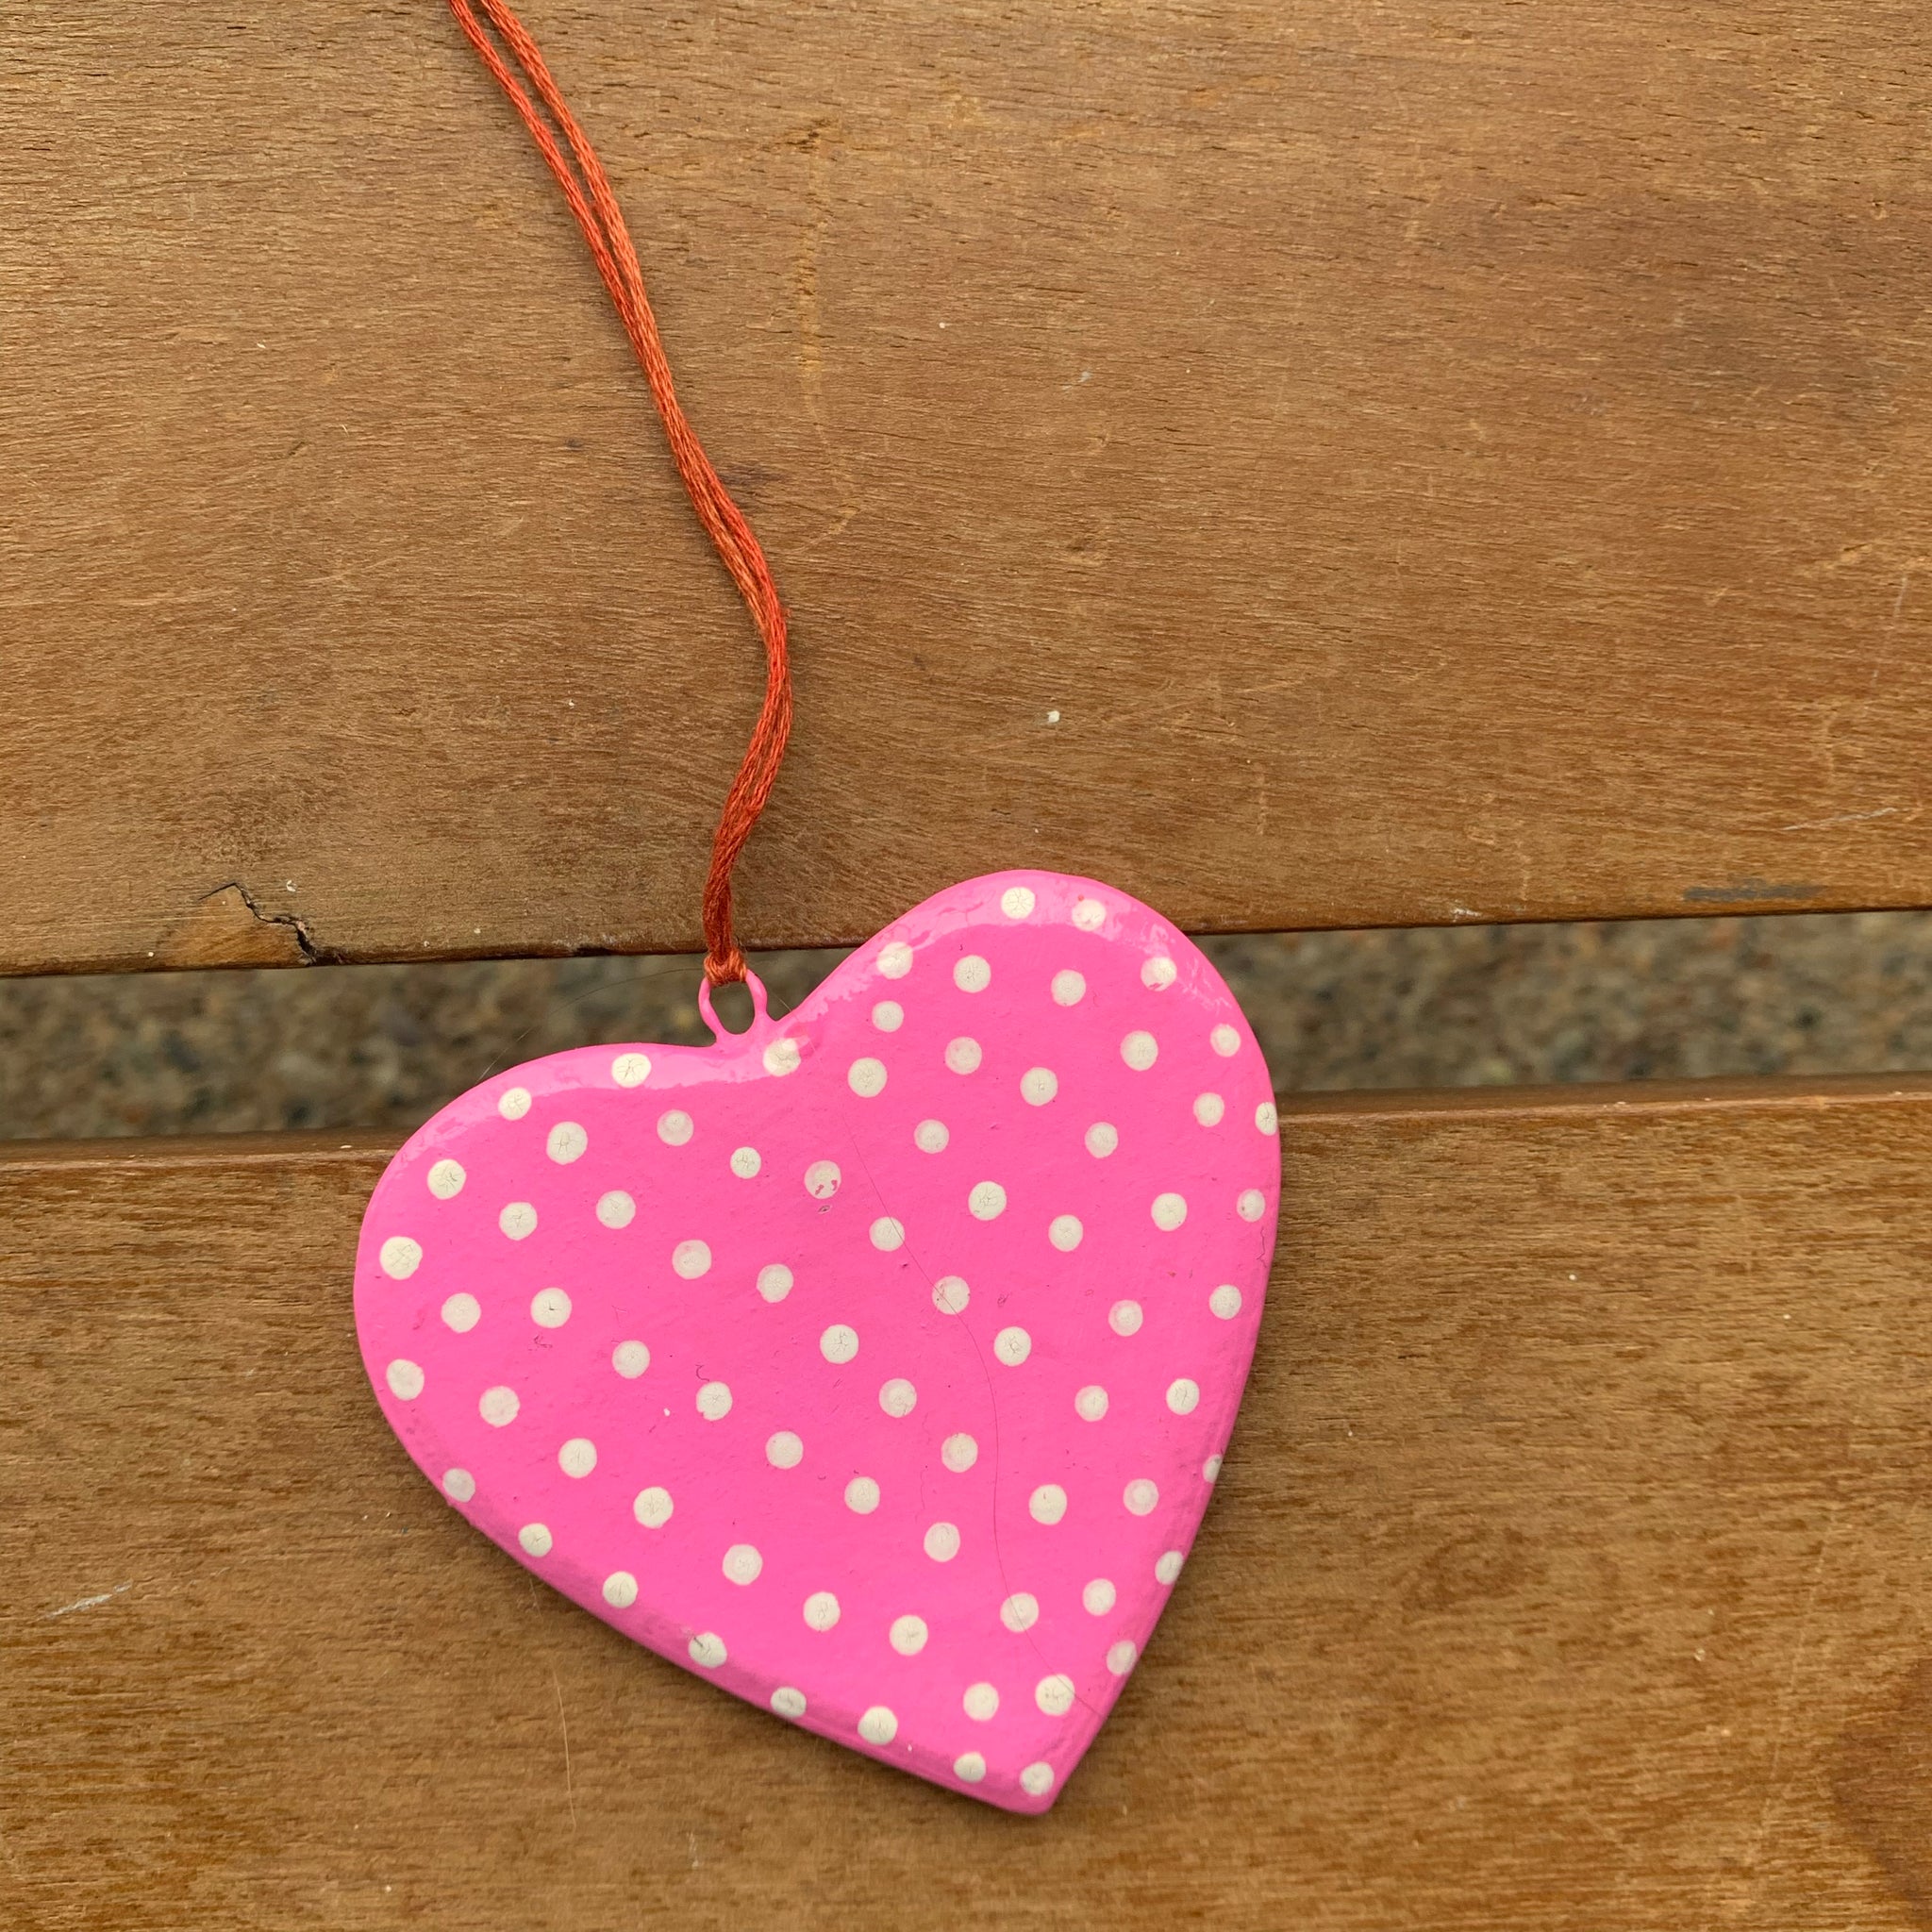 Flat Wooden Heart - Pink Polka Dot